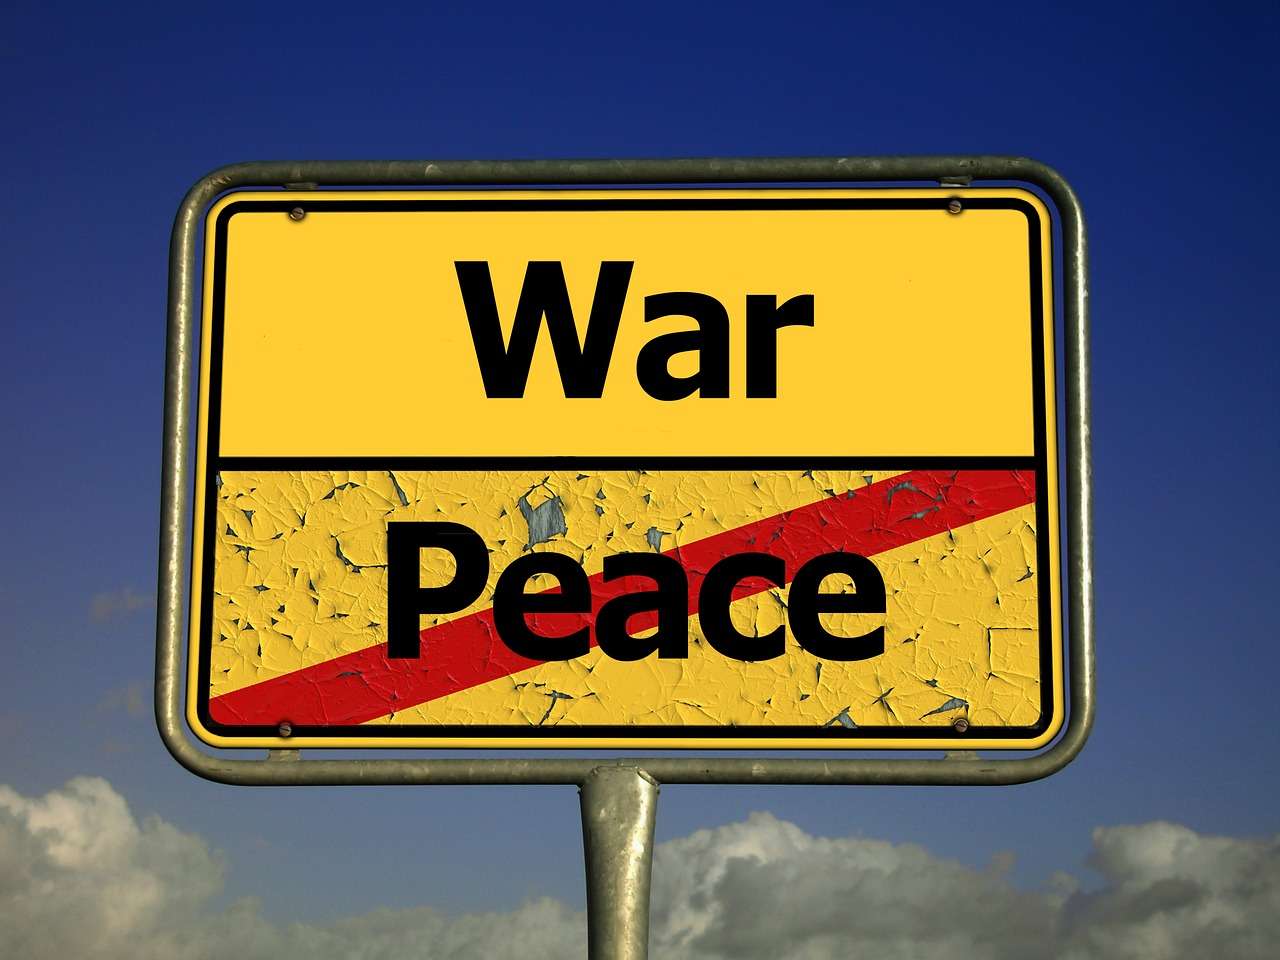 Πόλεμος δίχως τέλος! Η Μόσχα προειδοποίησε την Ουάσινγκτον ότι η βοήθεια προς την Ουκρανία, μόνο «απρόβλεπτες συνέπειες» θα φέρει